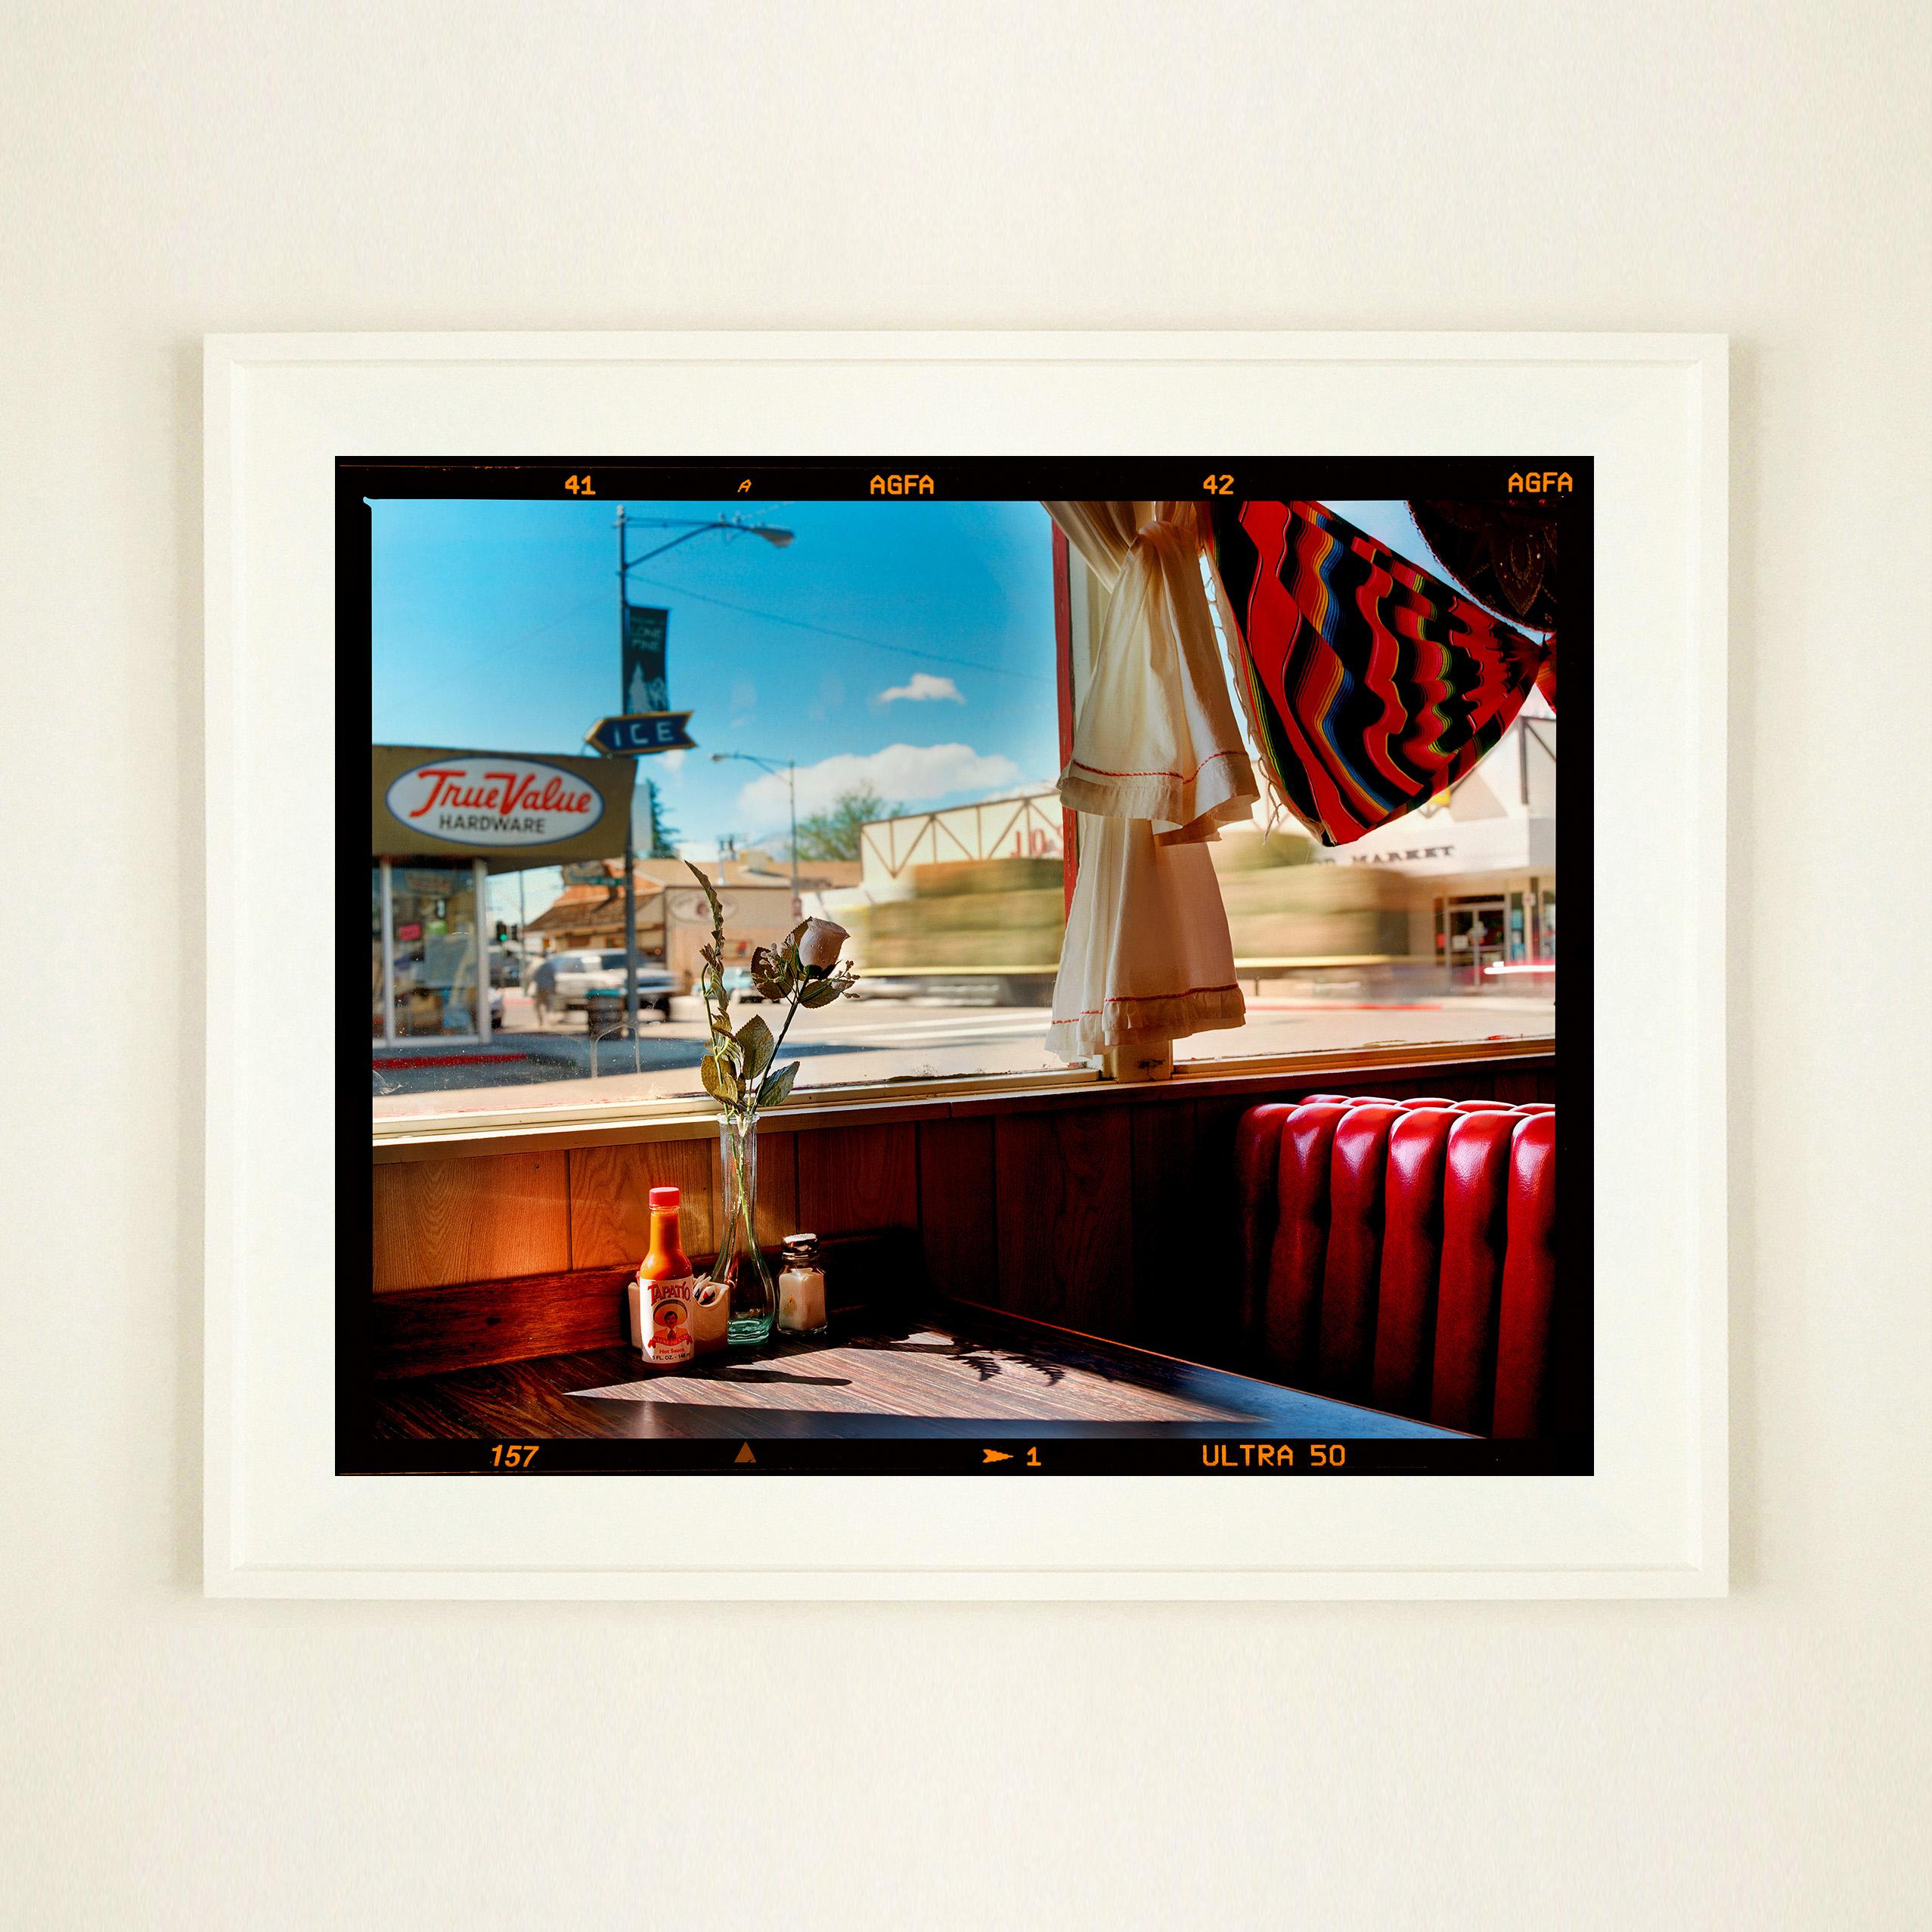 Bonanza Café, photographie emblématique de la série Dream in Colour de Richard Heeps, qui a servi de couverture à son livre Man's Ruin. La photo vous ramène dans une petite ville américaine, avec le soleil qui pénètre par les fenêtres sur les sièges